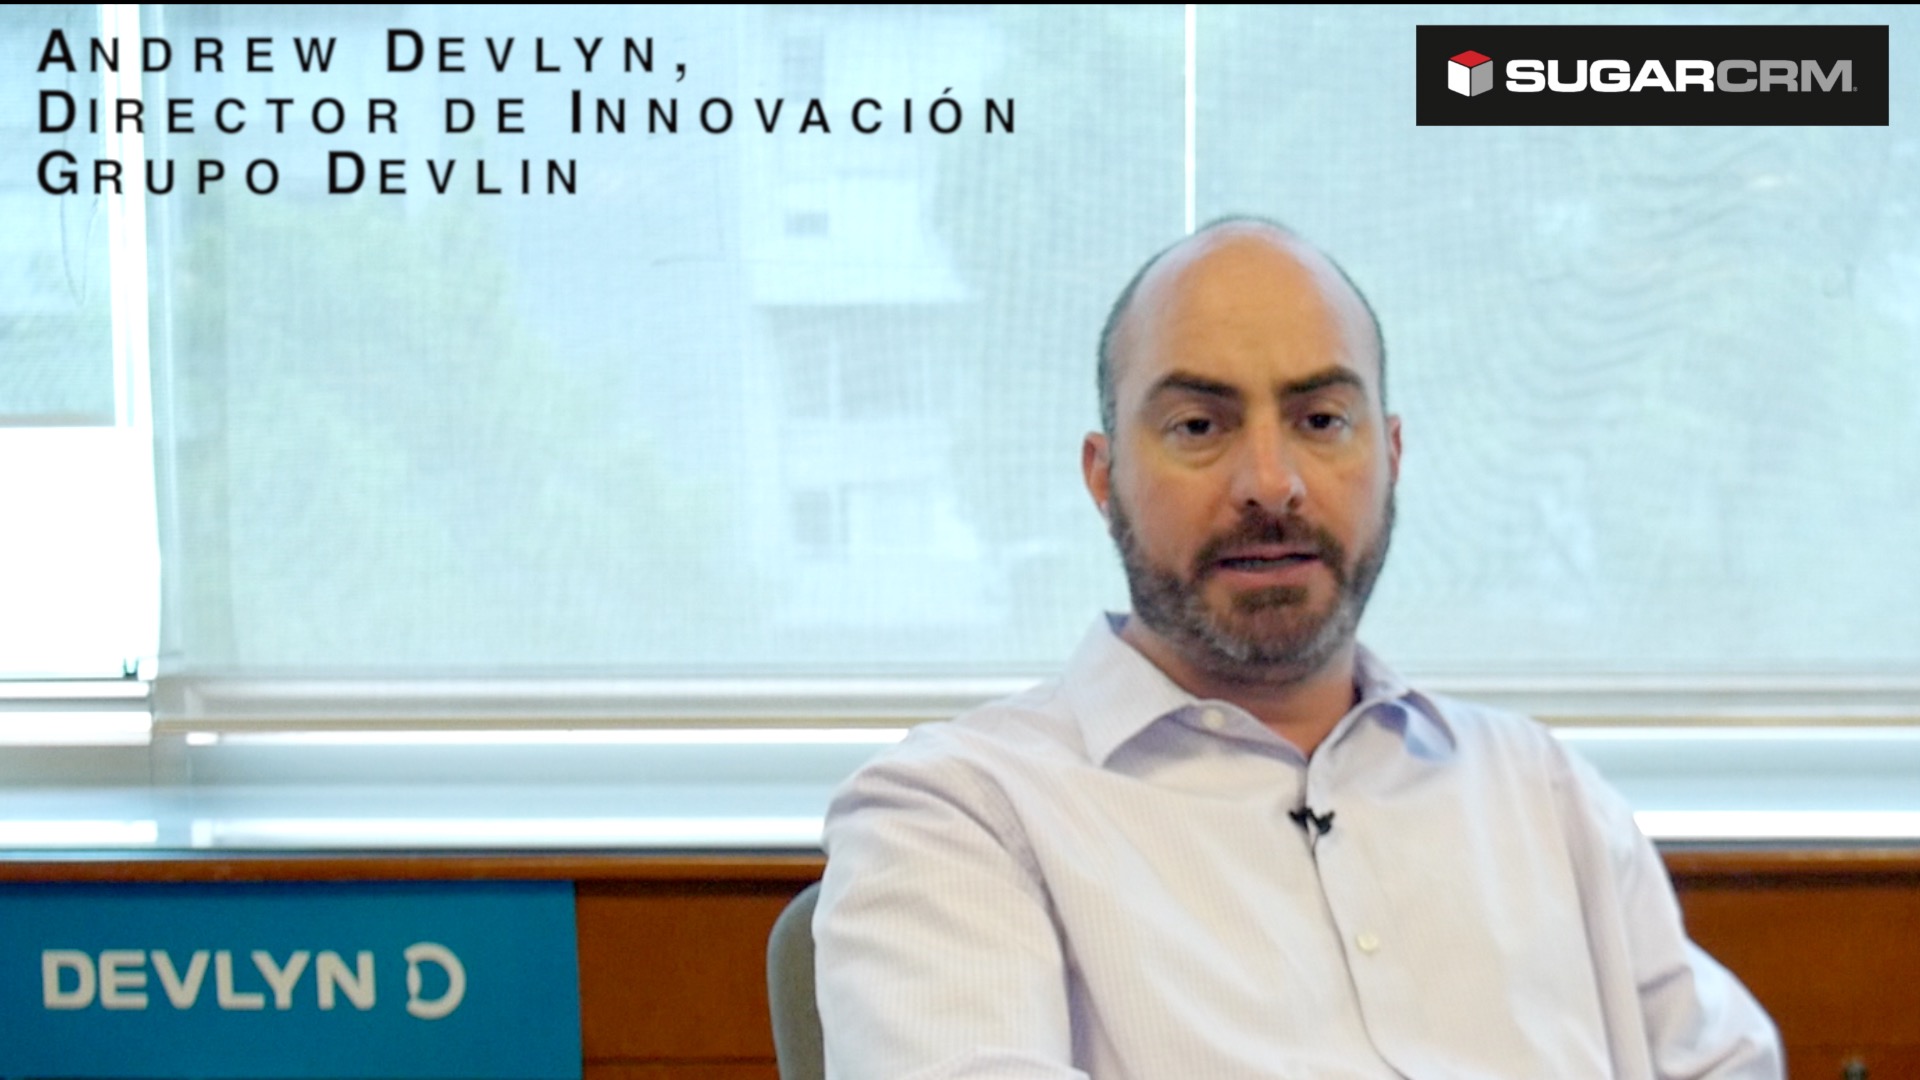 Andrew Devlyn, director de Innovación de Grupo Devlyn